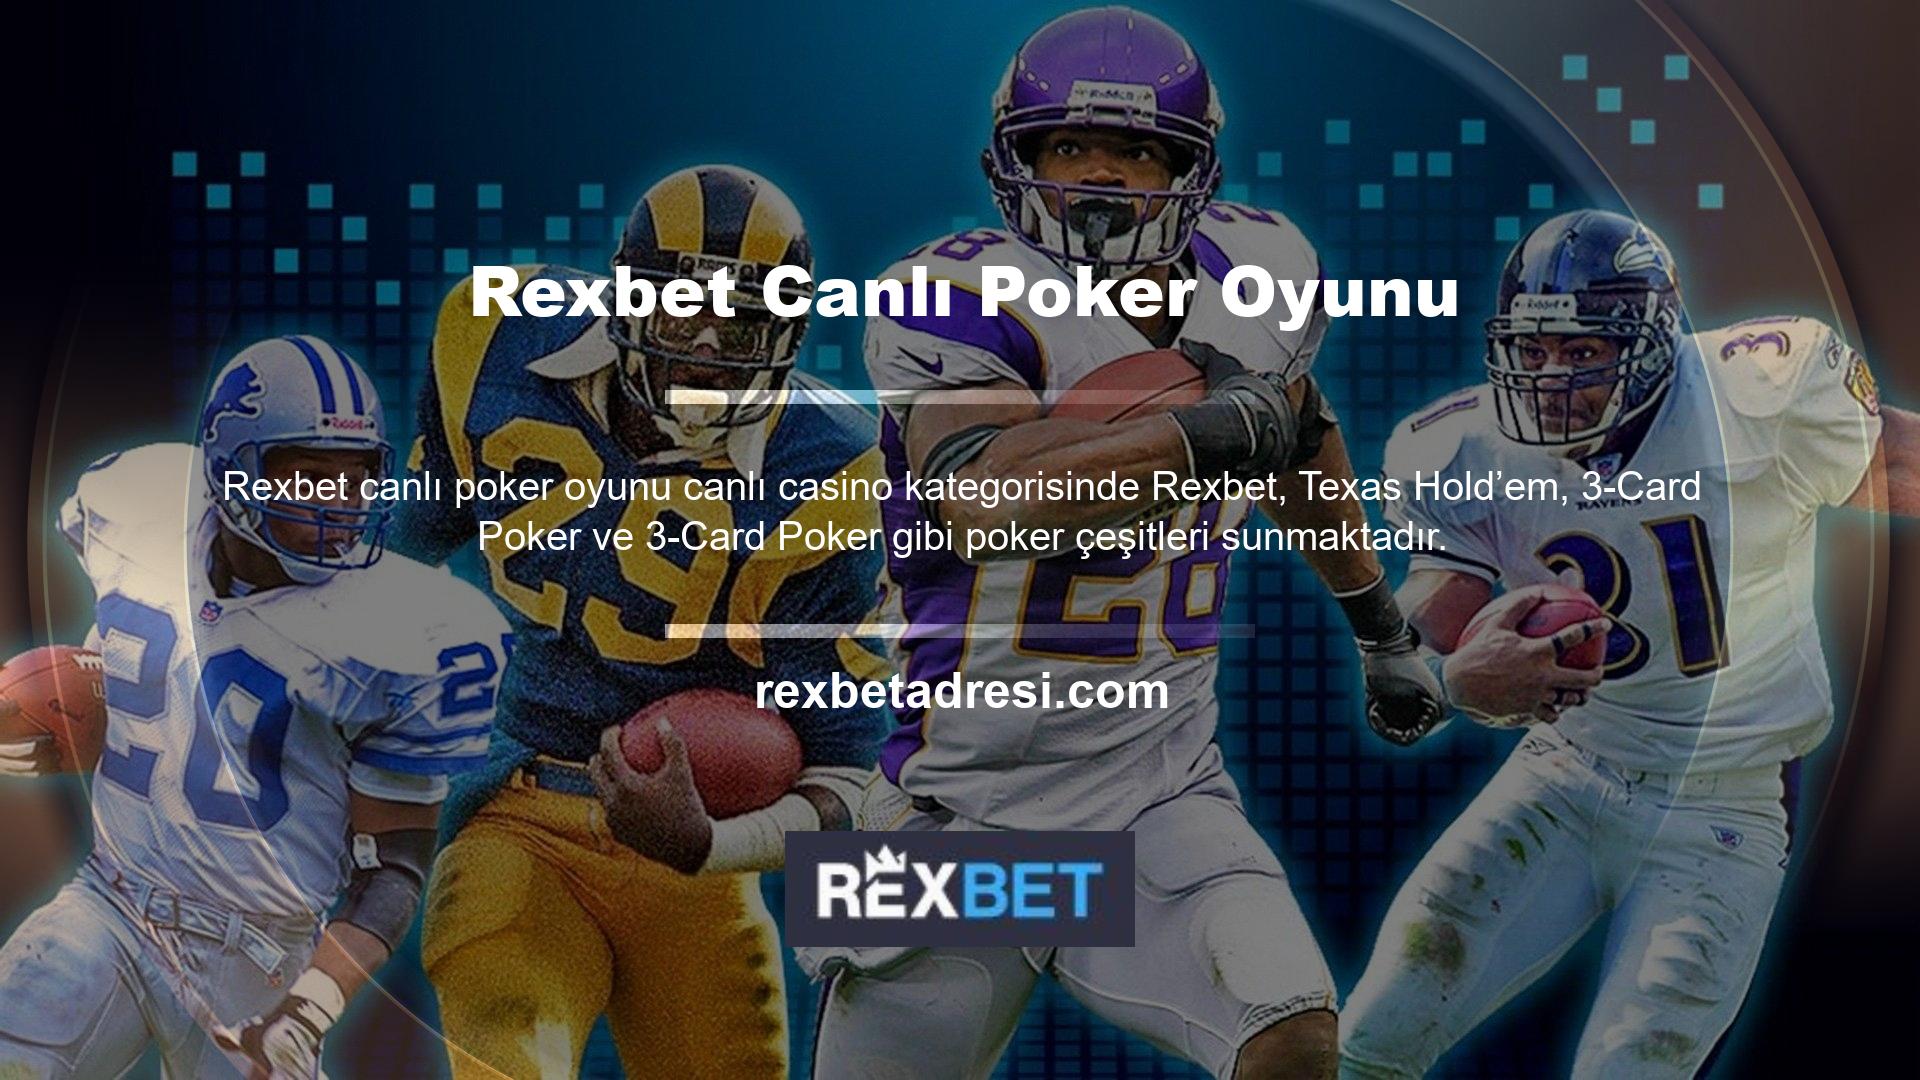 İstediğiniz zaman bir masaya katılabilir Rexbet canlı poker oyunu ve poker oyununuz için farklı limitler belirleyebilirsiniz